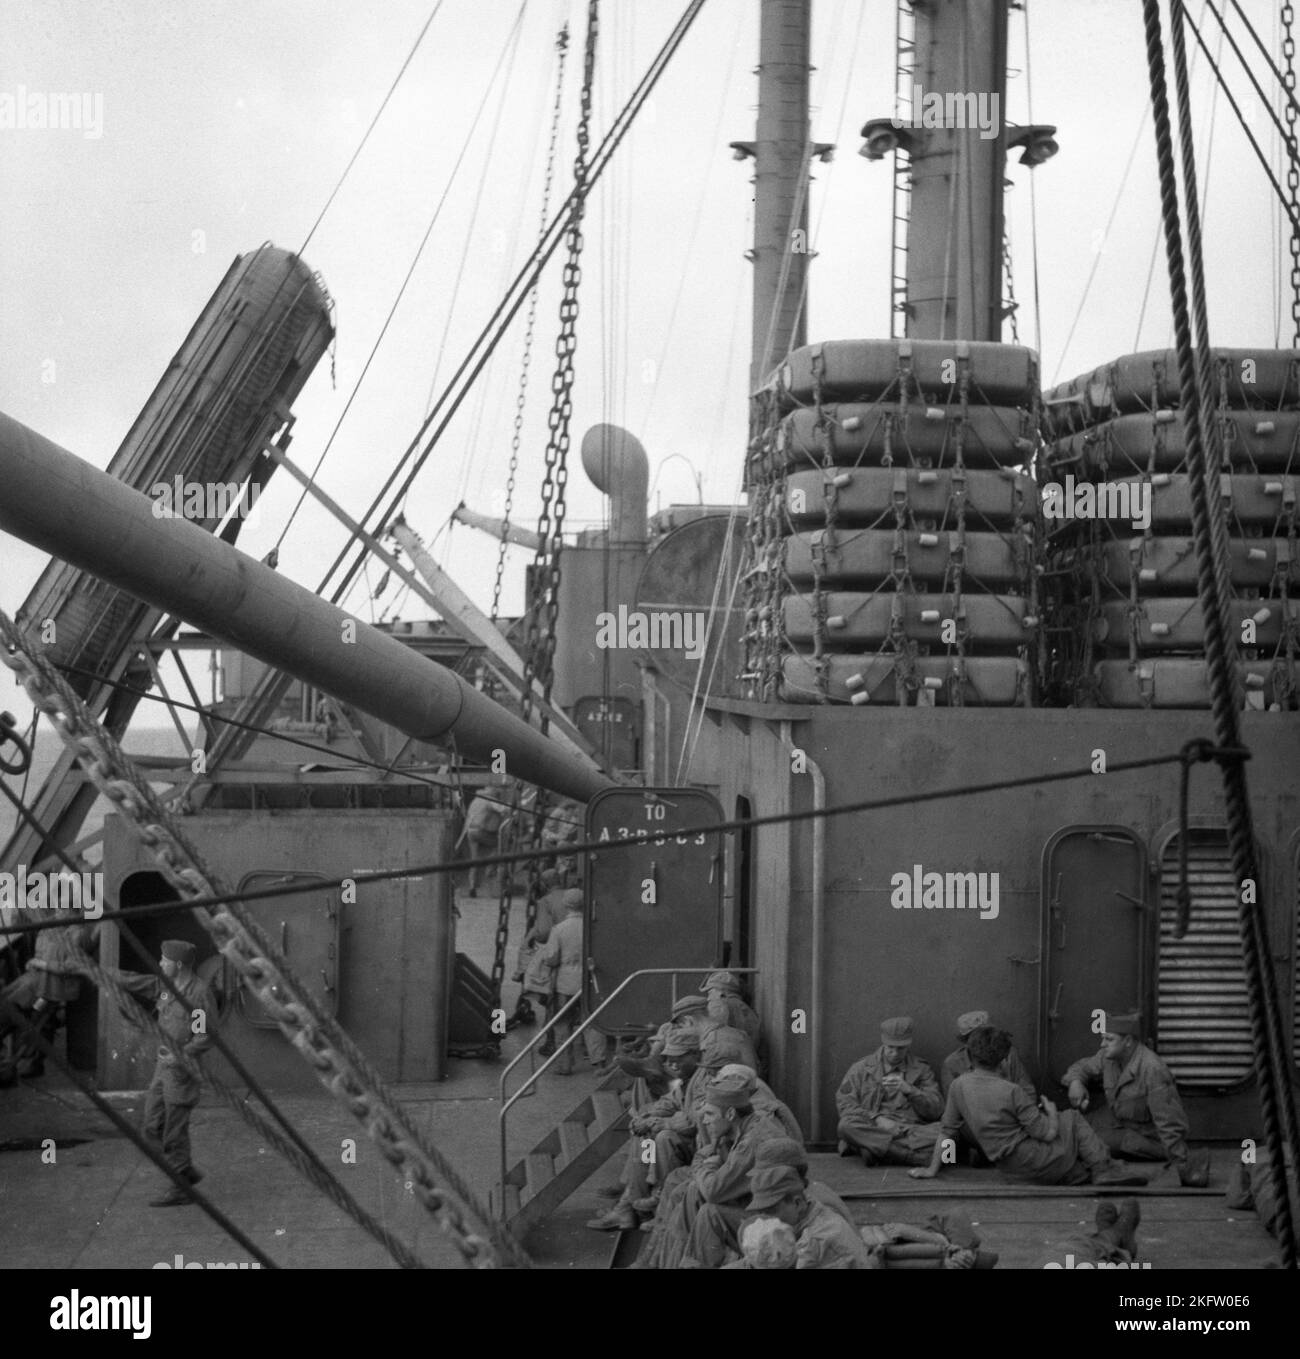 Männer, die auf dem Schiff sitzen. Veteranen der United States Army kommen nach dem Zweiten Weltkrieg auf dem Elgin Victory Schiff nach Hause SS Elgin Victory, ein von Permanente Metals gebautes Schiff vom Typ VC2-S-AP2 Victory Stockfoto